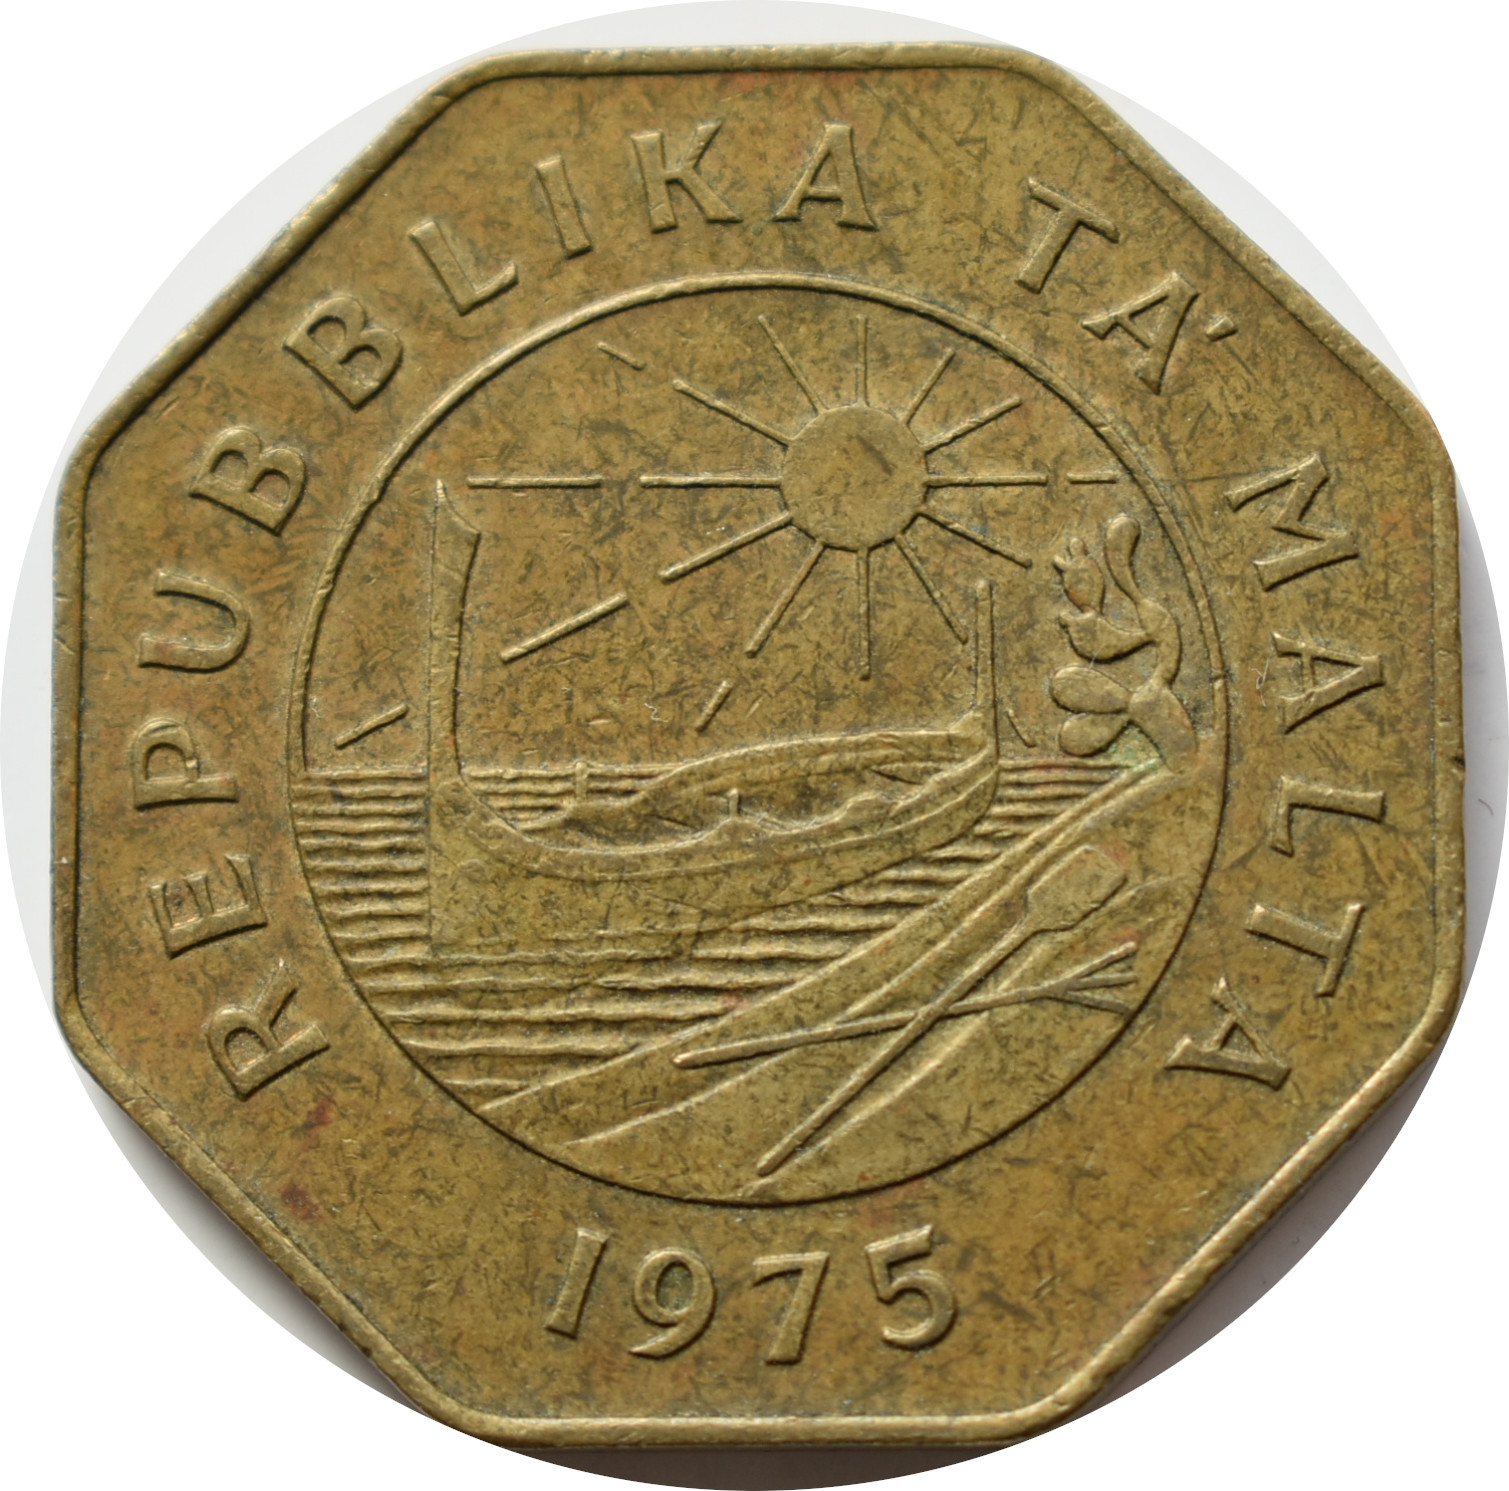 Malta 25 Cents 1975